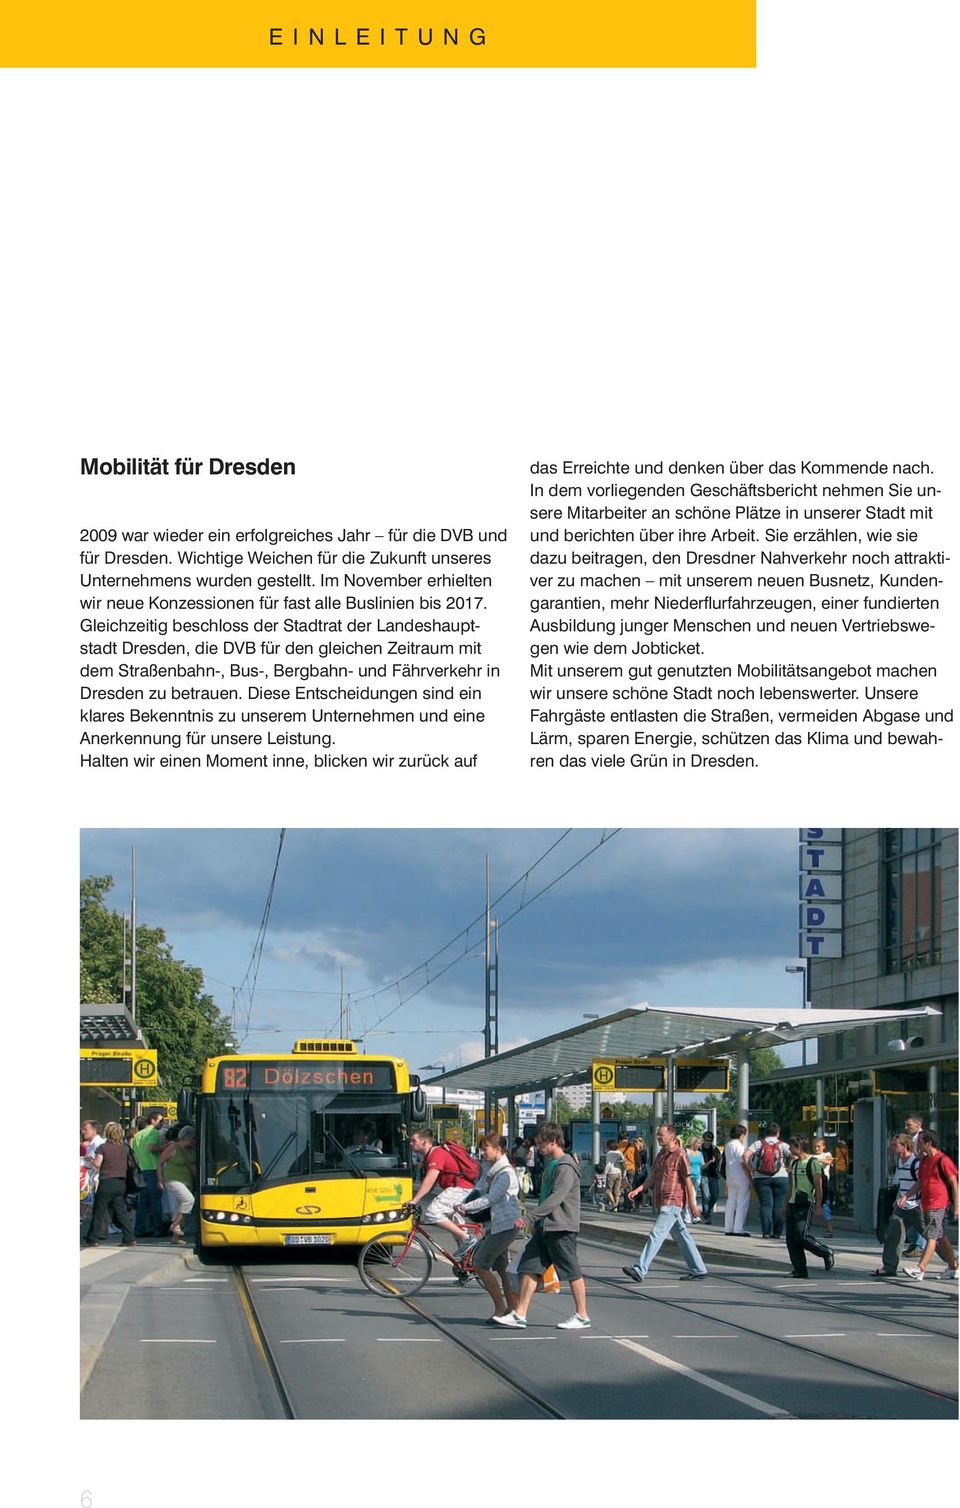 Gleichzeitig beschloss der Stadtrat der Landeshauptstadt Dresden, die DVB für den gleichen Zeitraum mit dem Straßenbahn-, Bus-, Bergbahn- und Fährverkehr in Dresden zu betrauen.